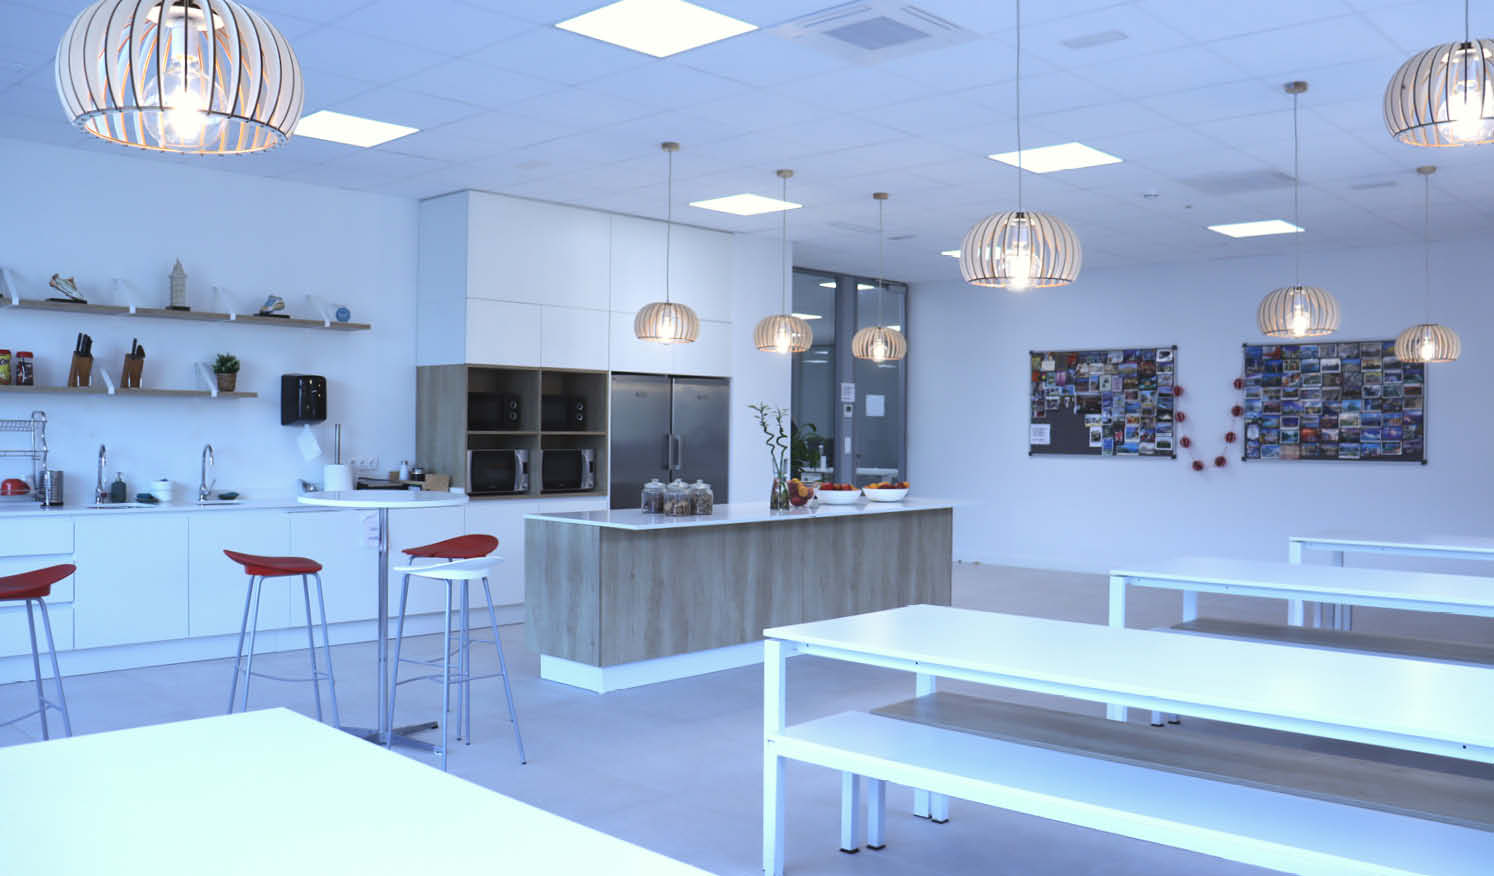 Office diseñado para el máximo confort con isla de cocina fabricada en carpintería metálica a medida